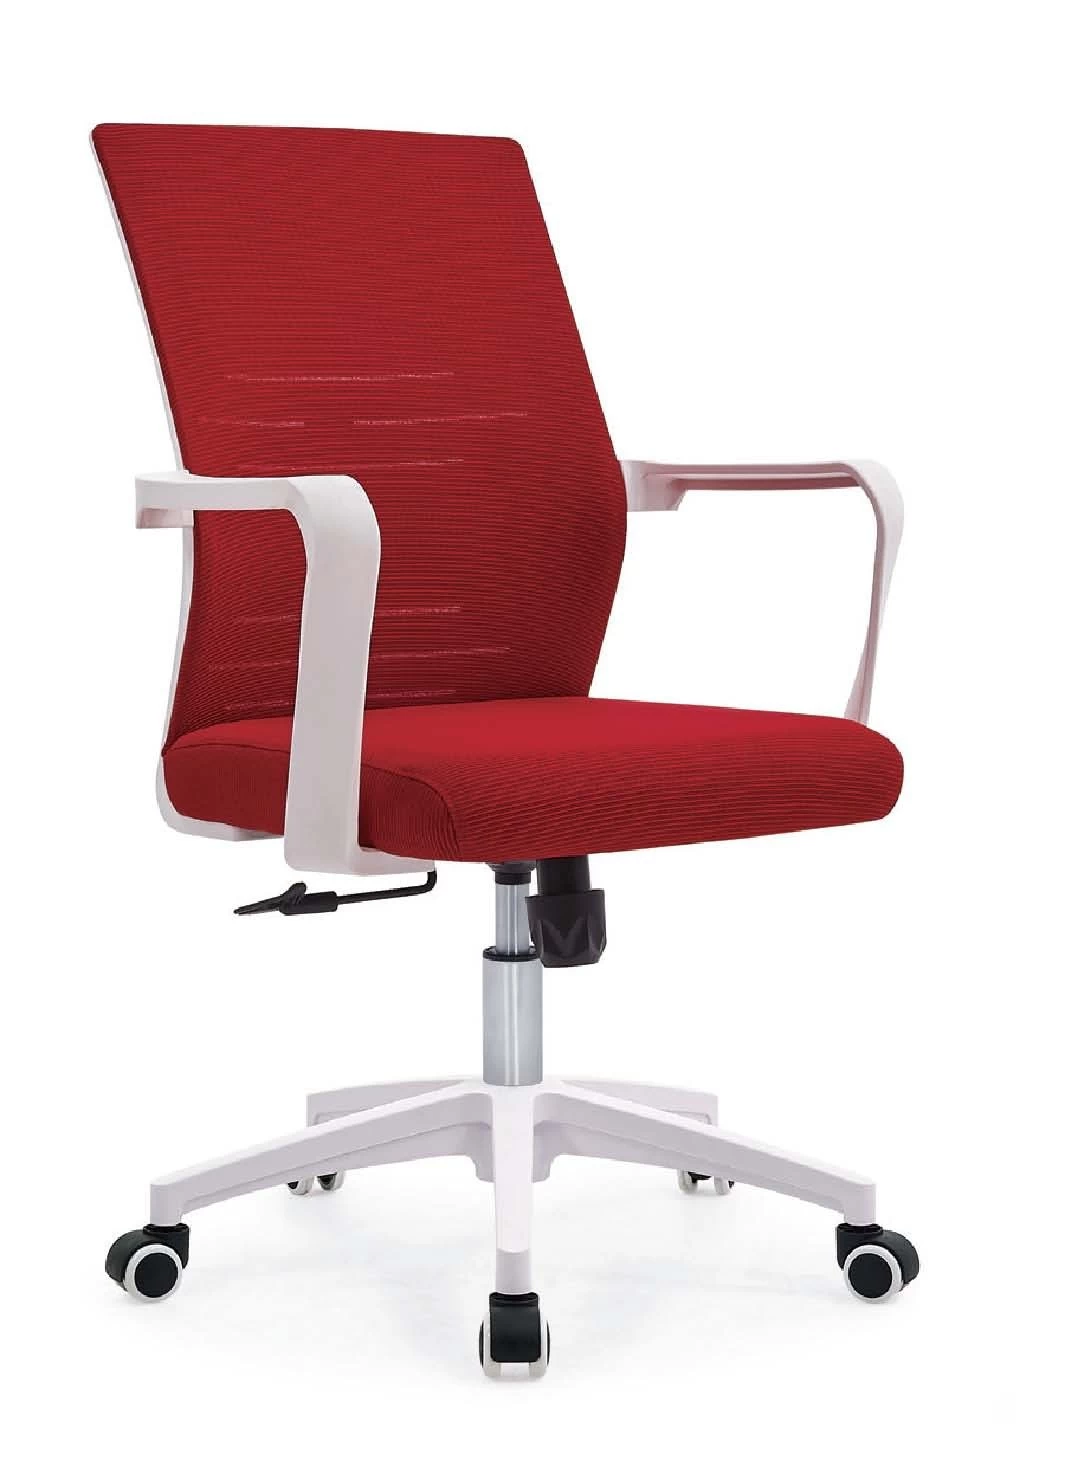 Newcity 507B pas cher milieu du dos personnel mobilier de bureau conférence chaise en maille vente chaude en gros chaise en maille tournante personnalisation multicolore fournisseur de chaise ergonomique en maille Foshan Chine